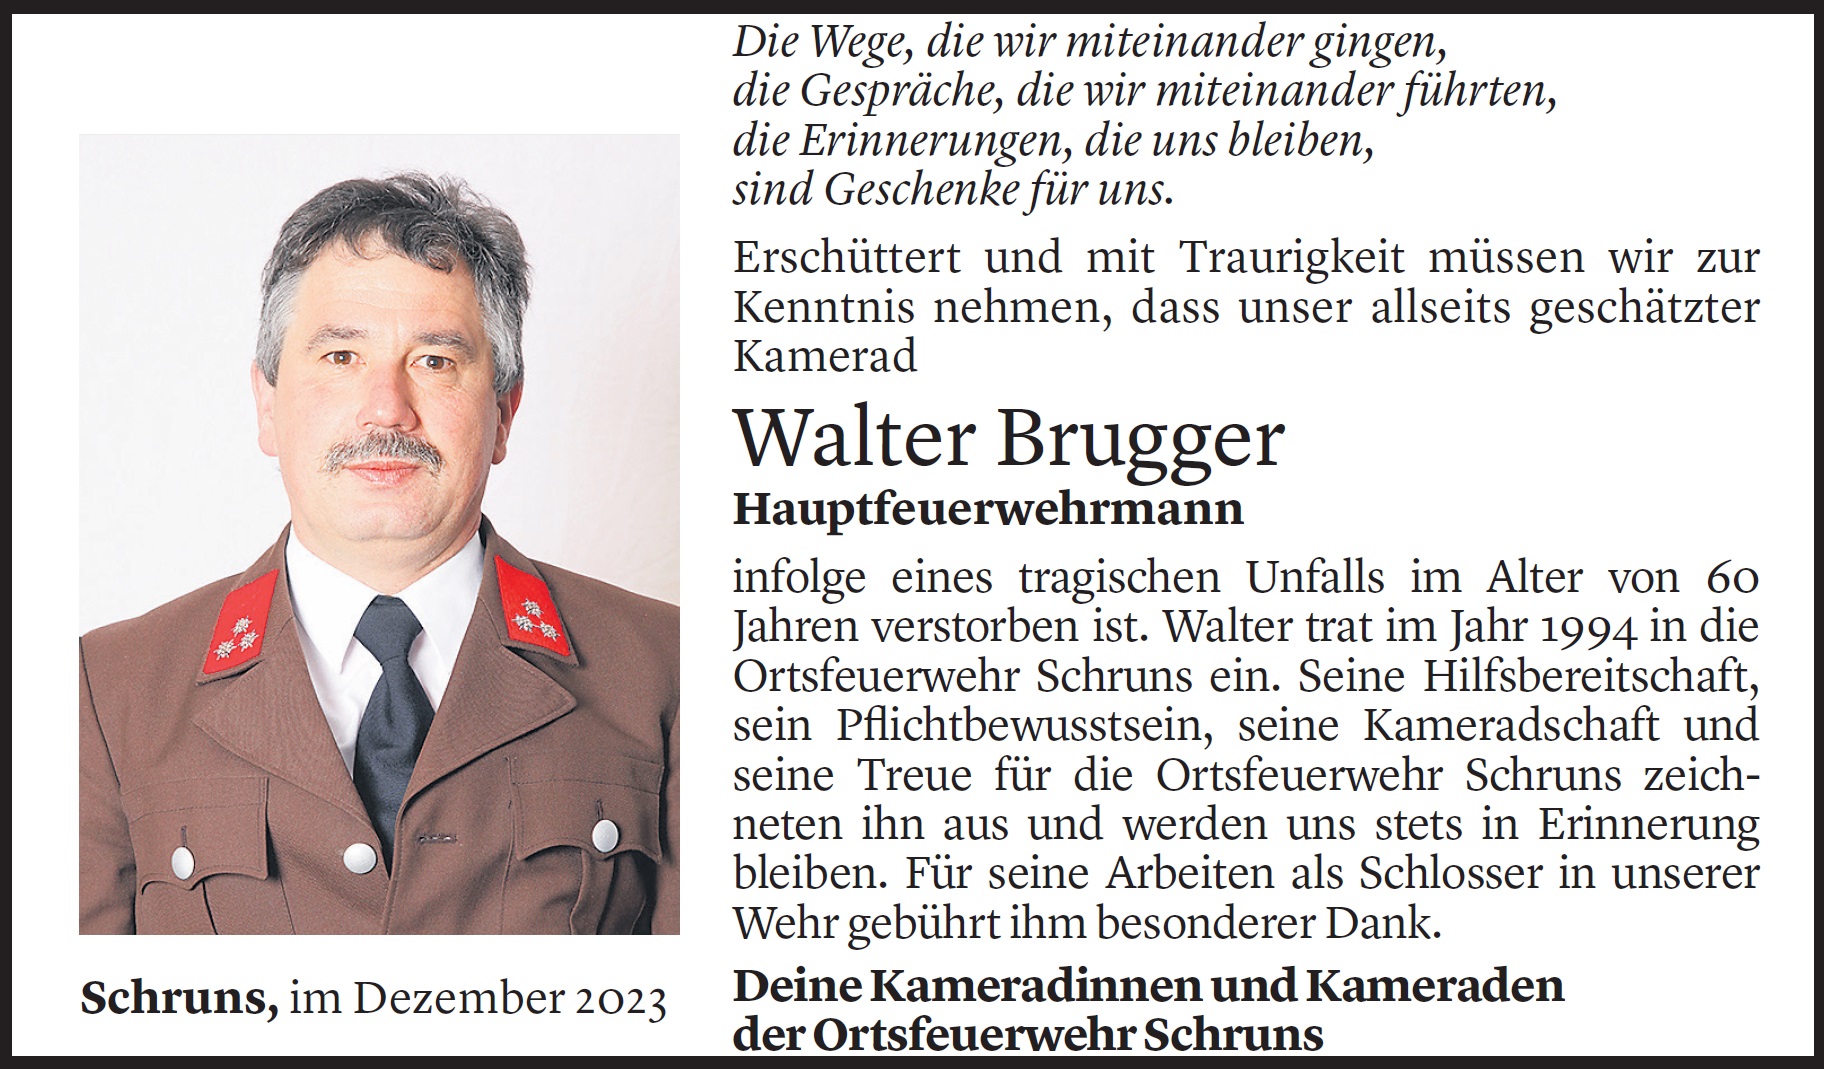 Feuerwehr Schruns Brugger Walter 1